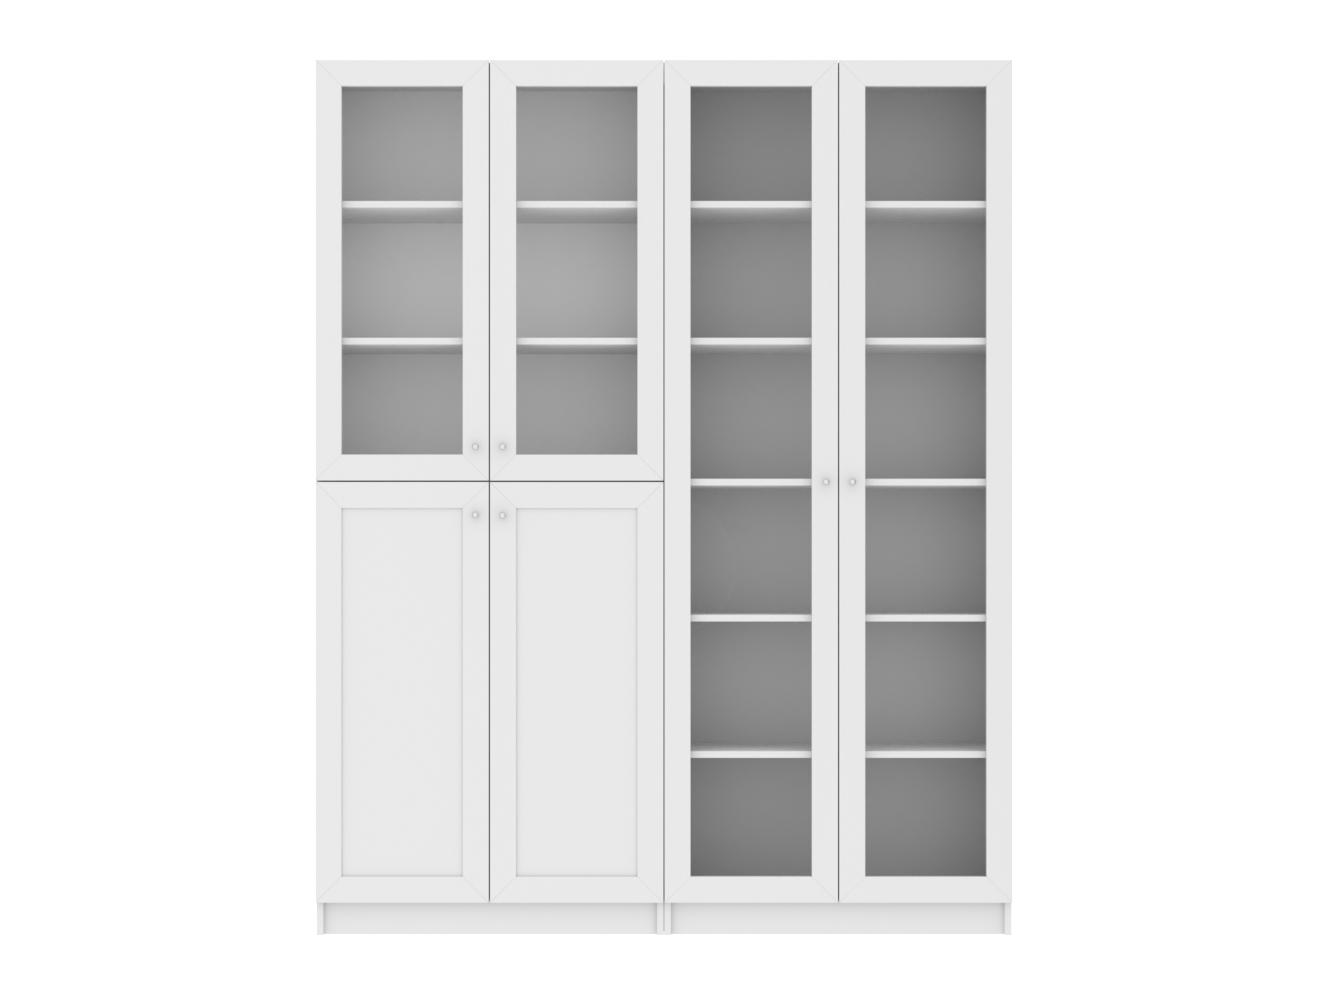 Изображение товара Книжный шкаф Билли 345 white ИКЕА (IKEA), 160x30x202 см на сайте adeta.ru